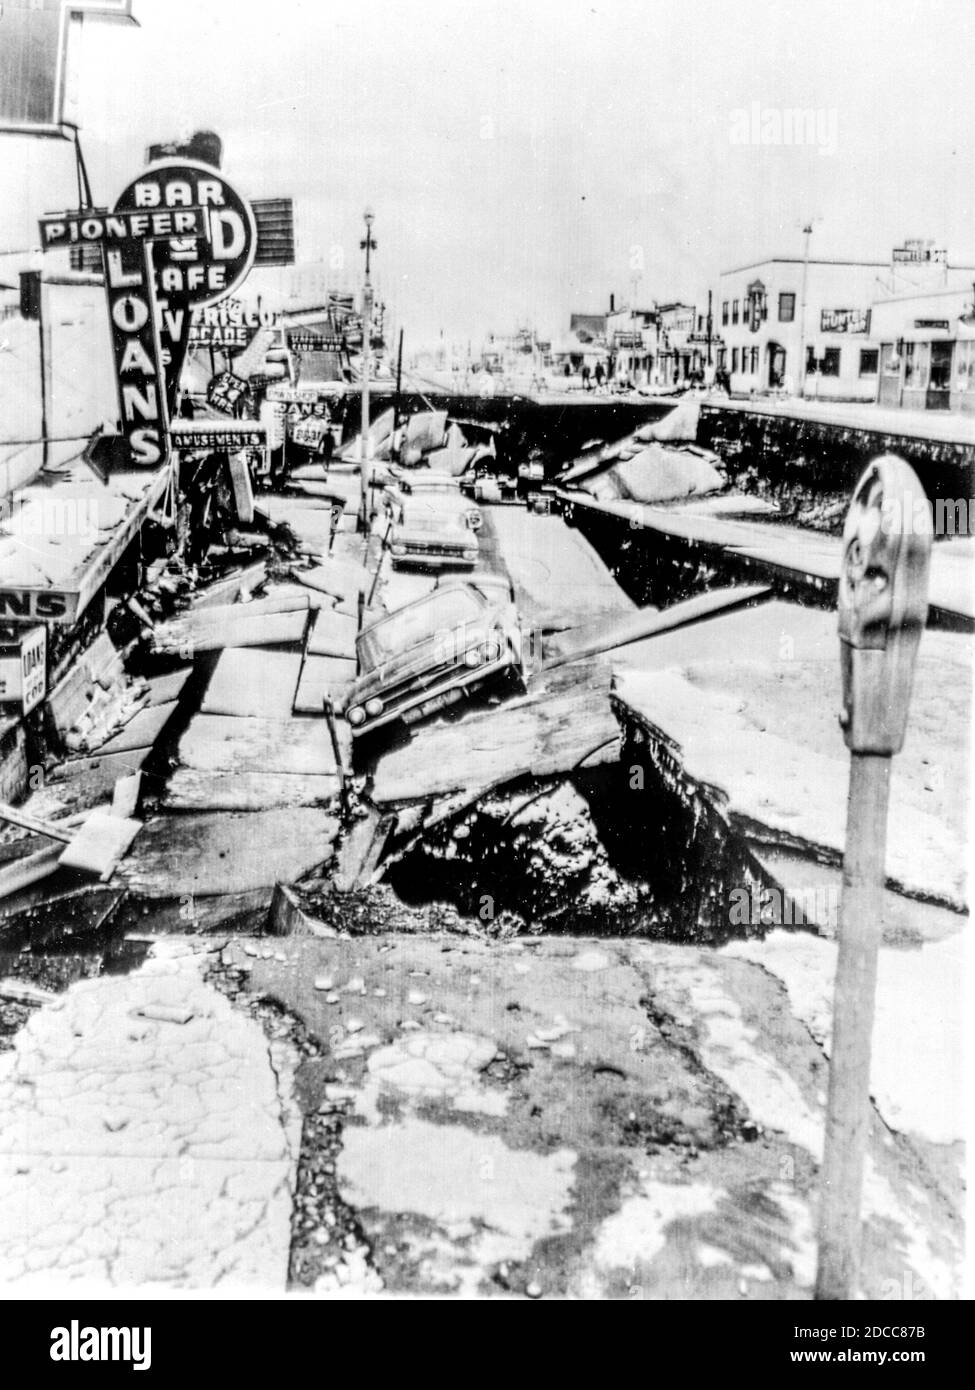 Schäden an 4th Avenue in Anchorage durch das große Alaskan Erdbeben und Erdrutsch Karfreitag 1964 verursacht. Mit einer Stärke von 9,2 bleibt es das stärkste Erdbeben in der nordamerikanischen Geschichte und das zweitstärkste Erdbeben in der Weltgeschichte. Stockfoto